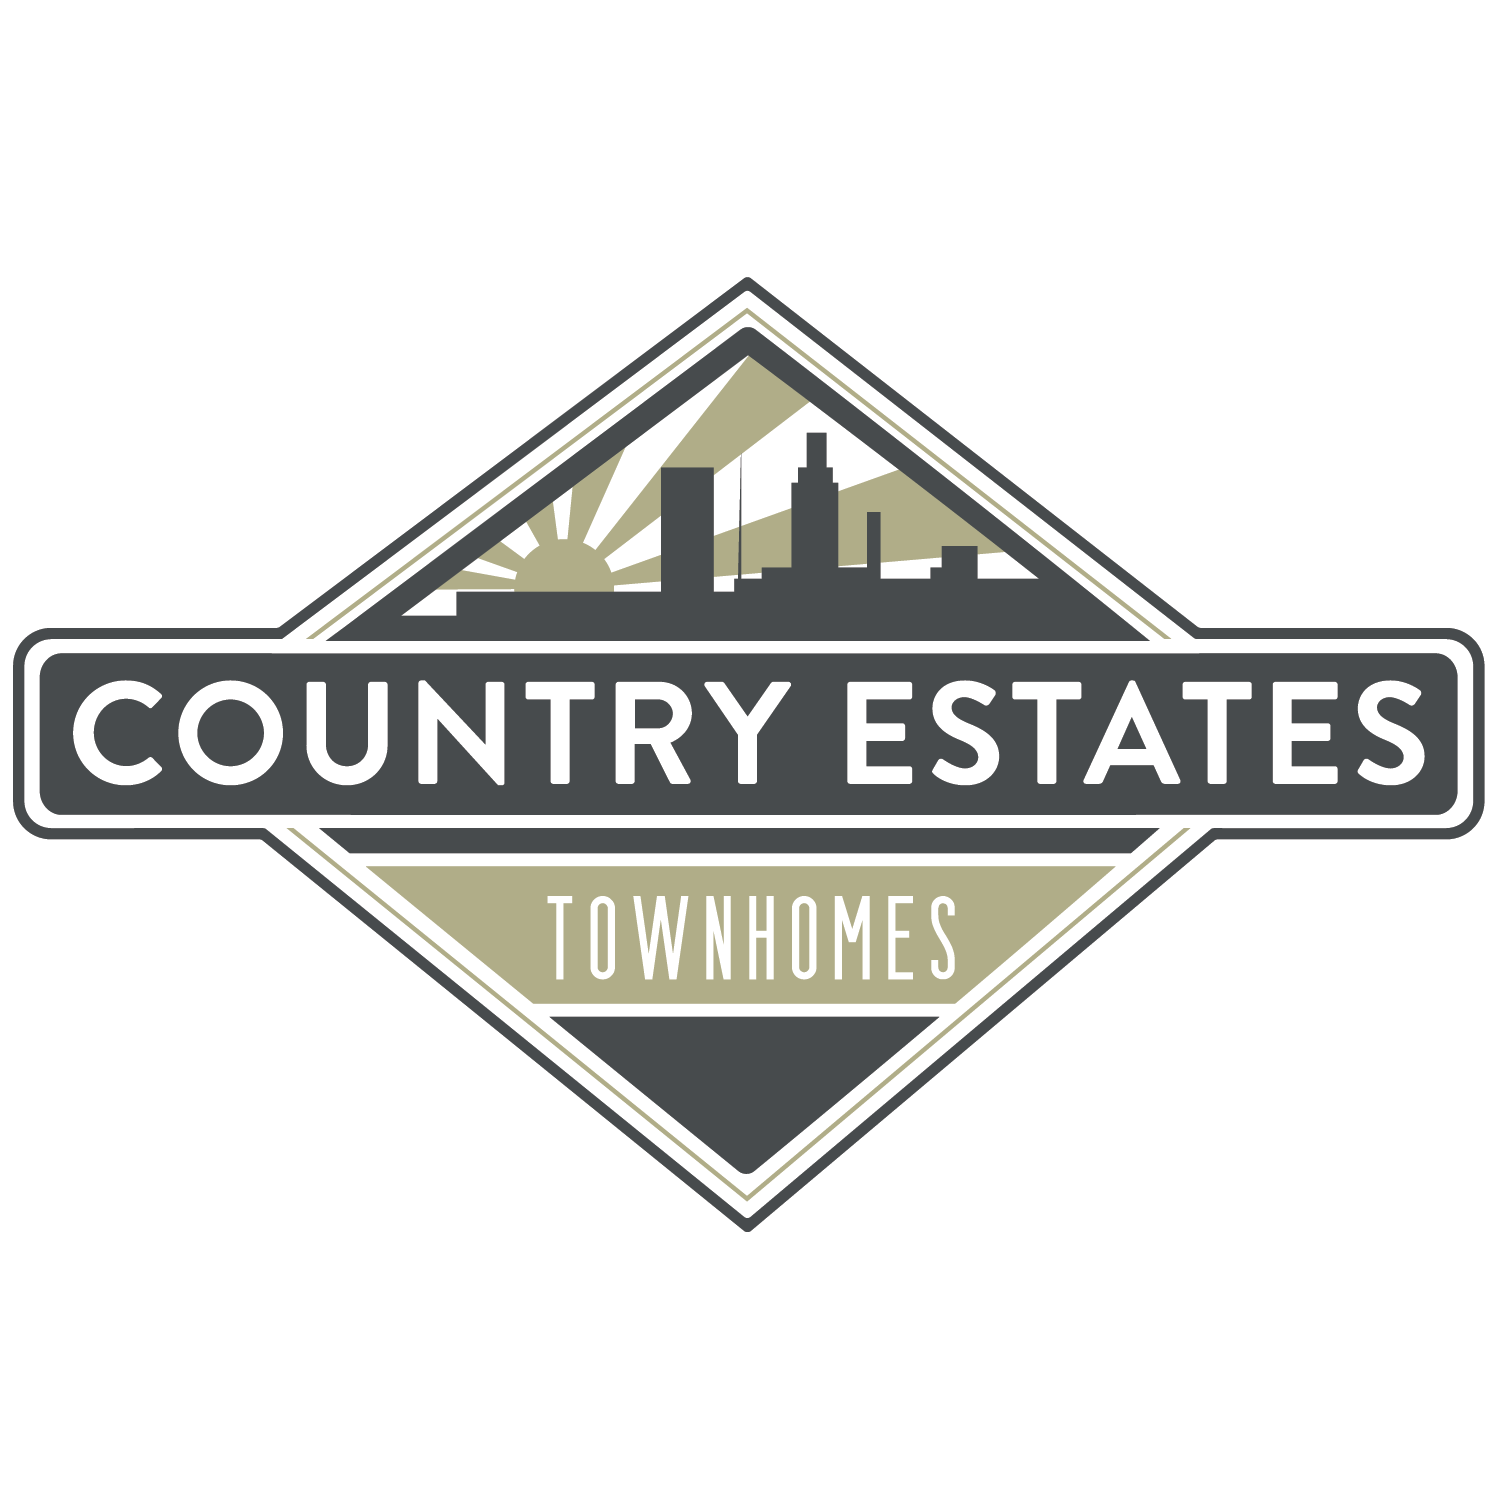 Country Estates Townhomes - Omaha, NE 68134 - (531)999-6366 | ShowMeLocal.com